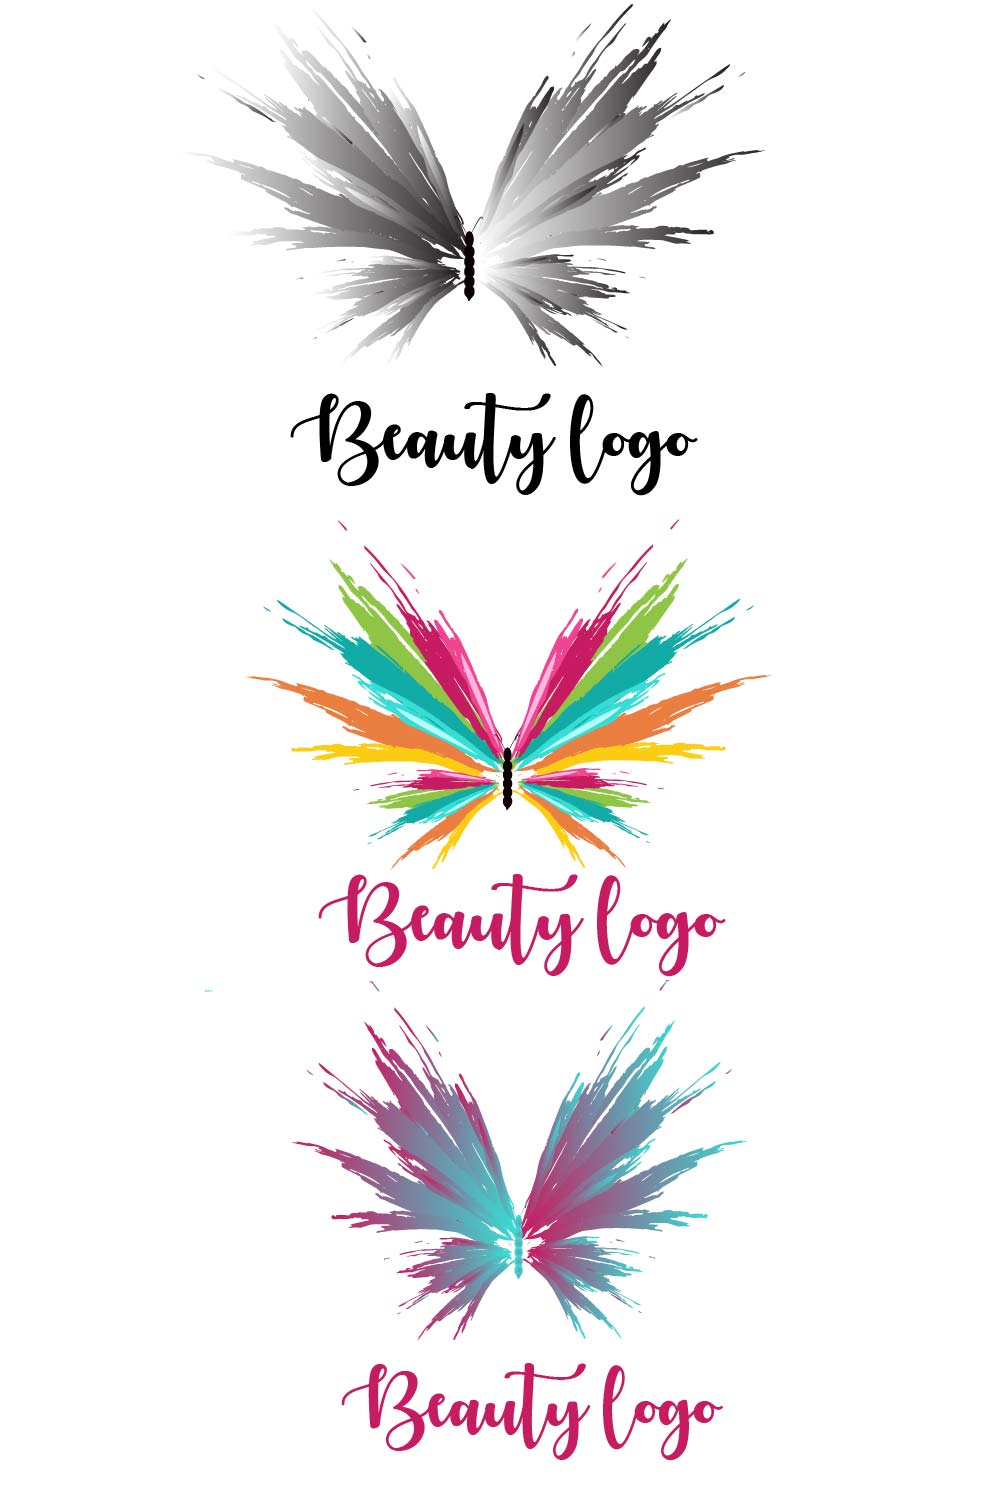 Beauty logo , spa logo pinterest preview image.